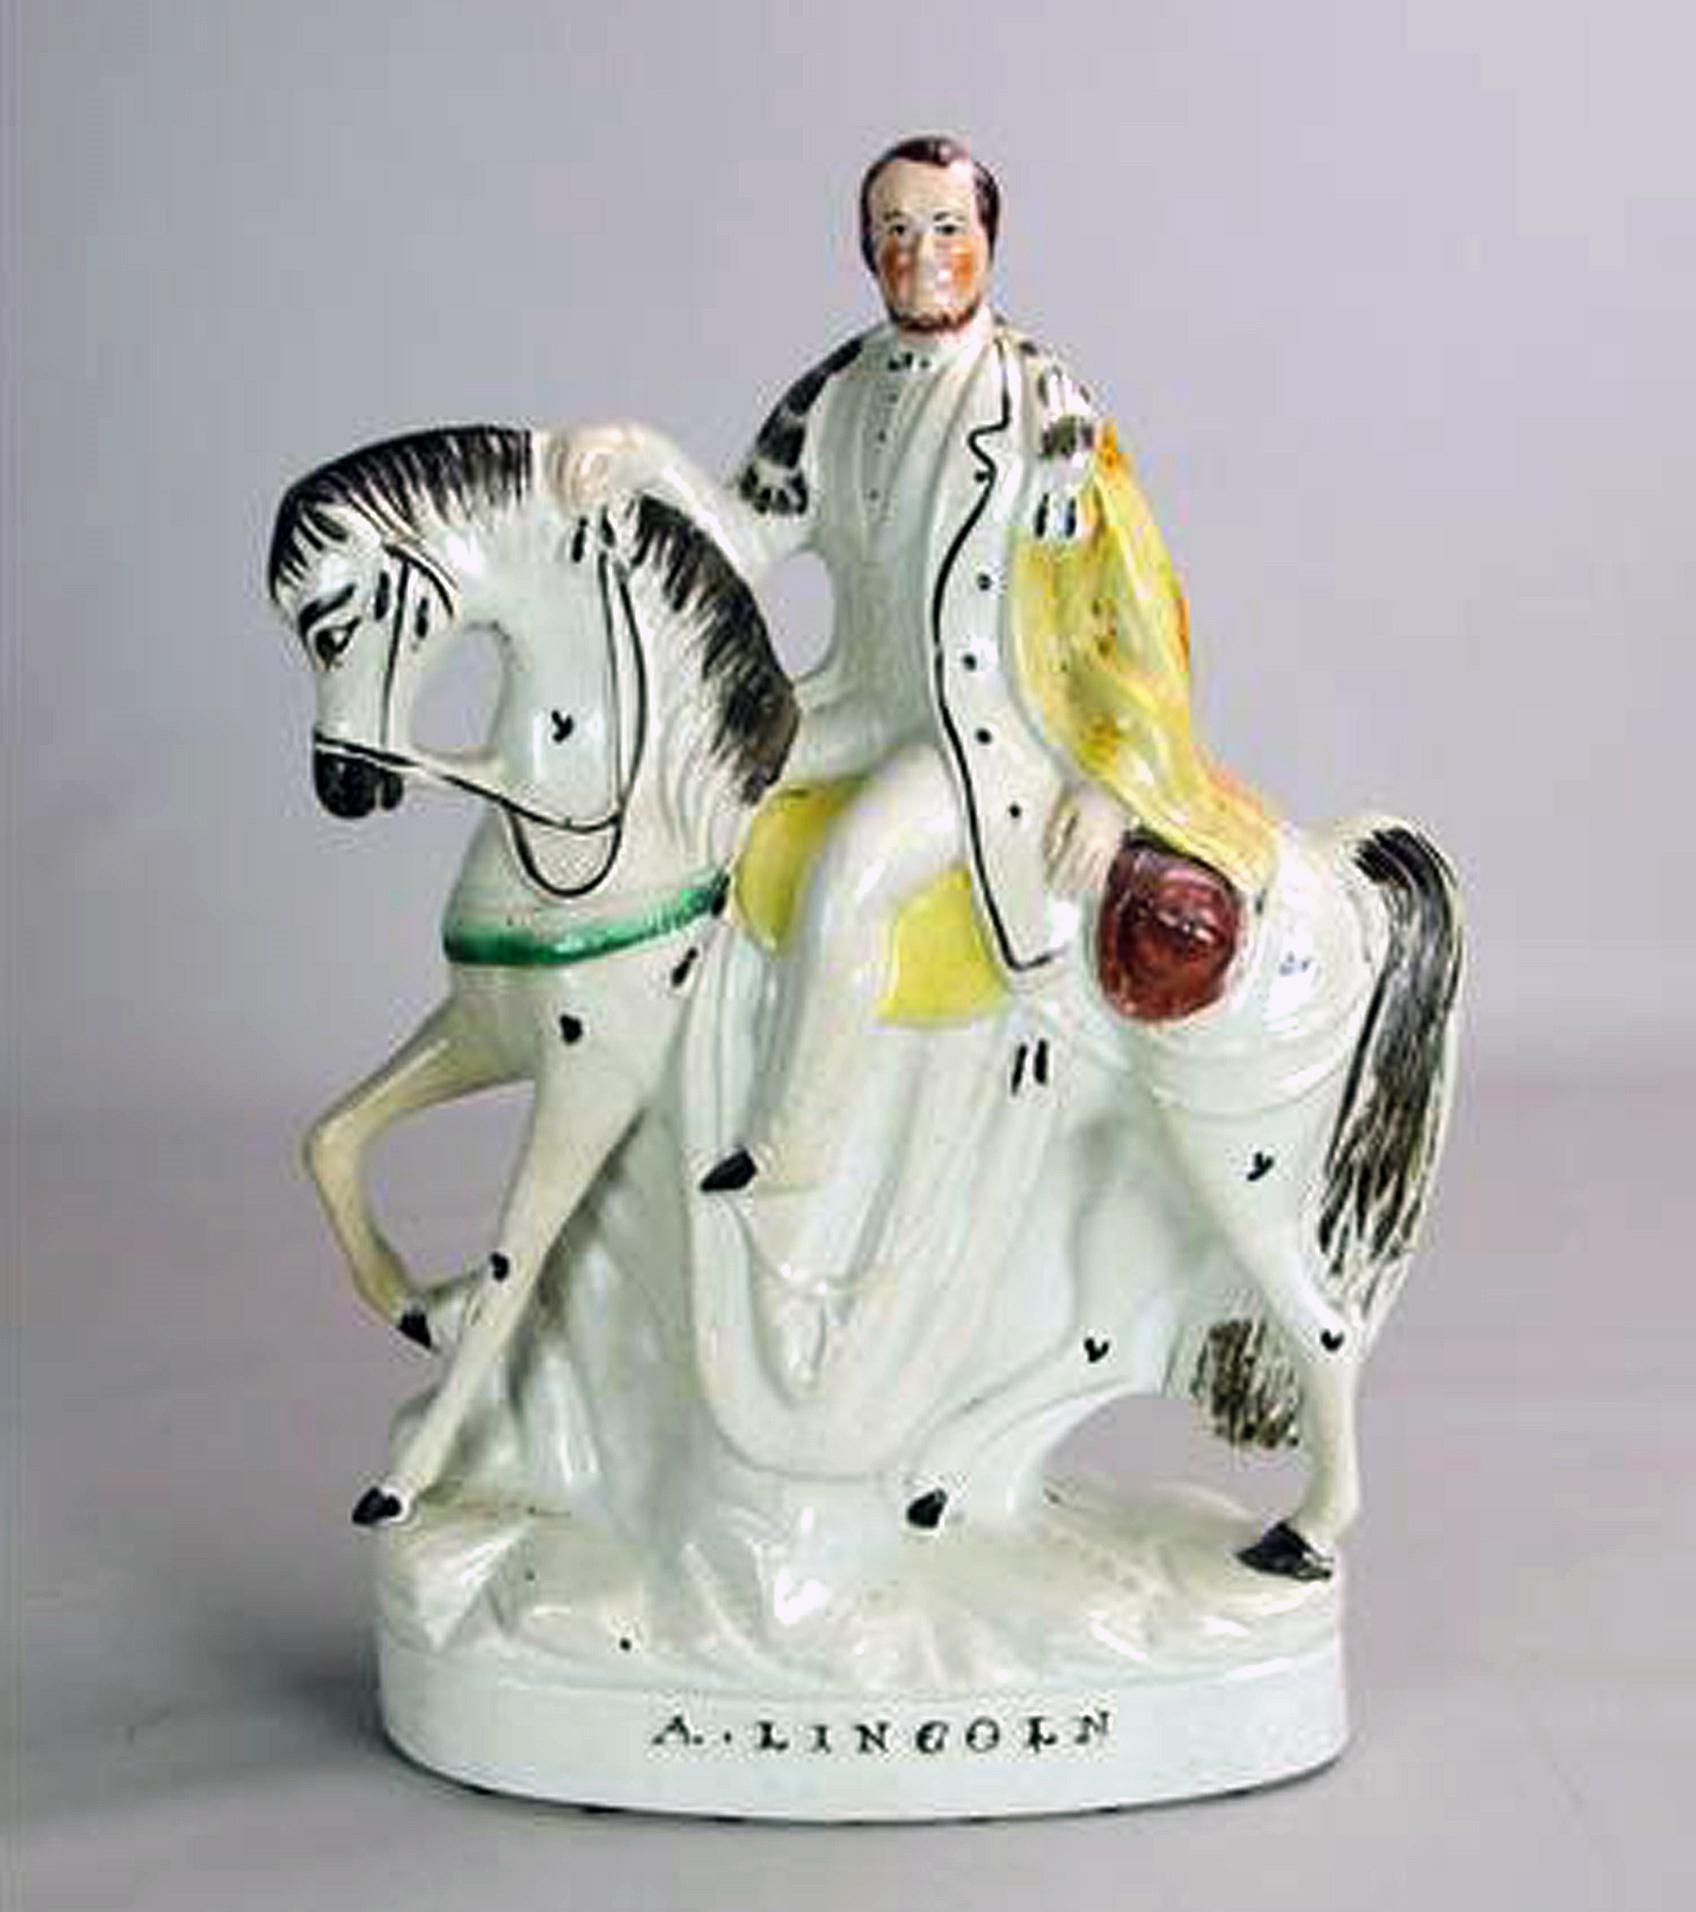 Figure de Lincoln à cheval en poterie du Staffordshire
Milieu du 19e siècle

La figurine représente le président Abraham Lincoln assis à cheval, la tête tournée vers le spectateur, sur une base ovale. Le nom A. LINCOLN est gravé en noir dans la